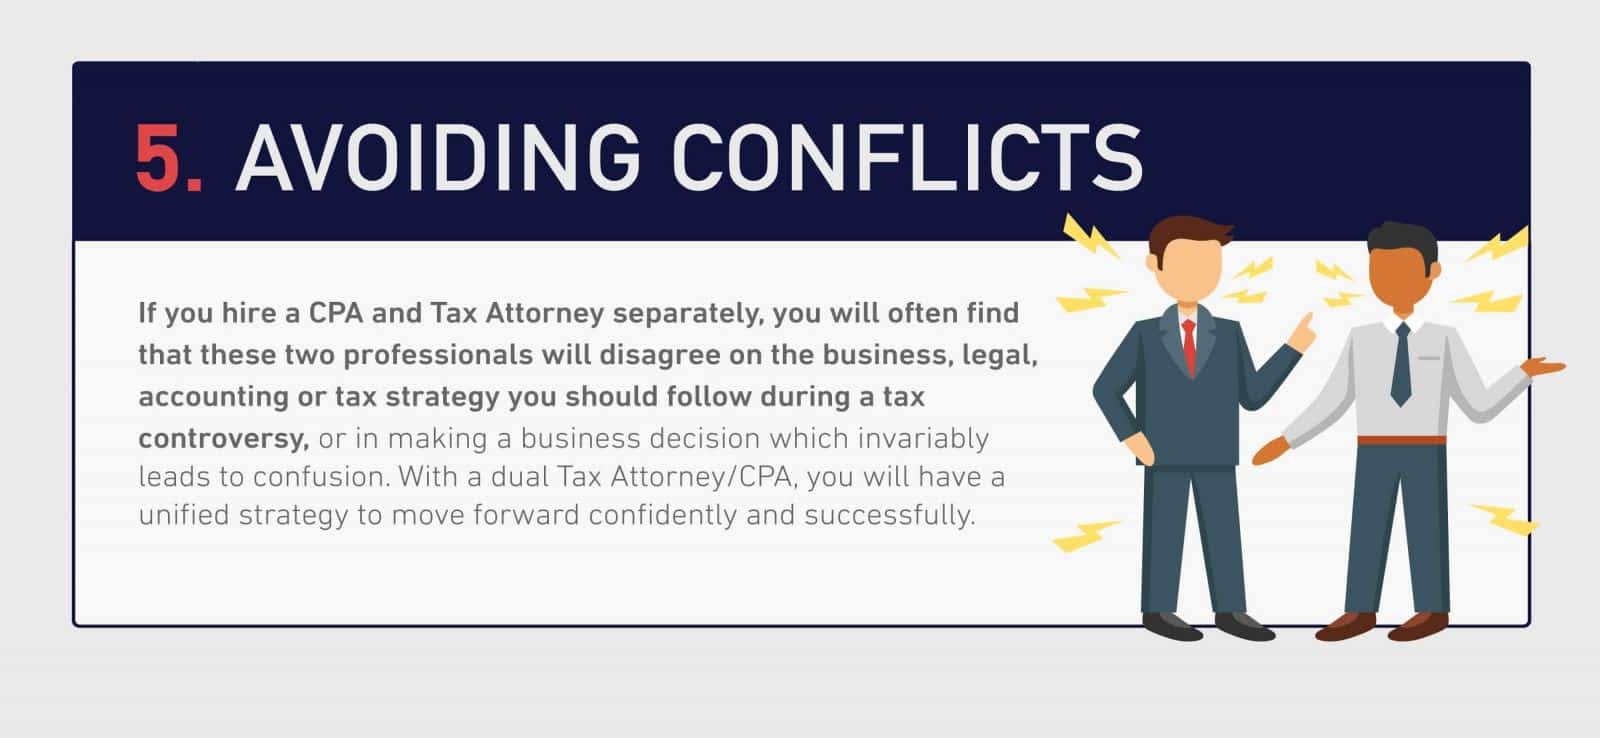 Avoiding-conflicts-klasing-associates-oakland-tax-attorney